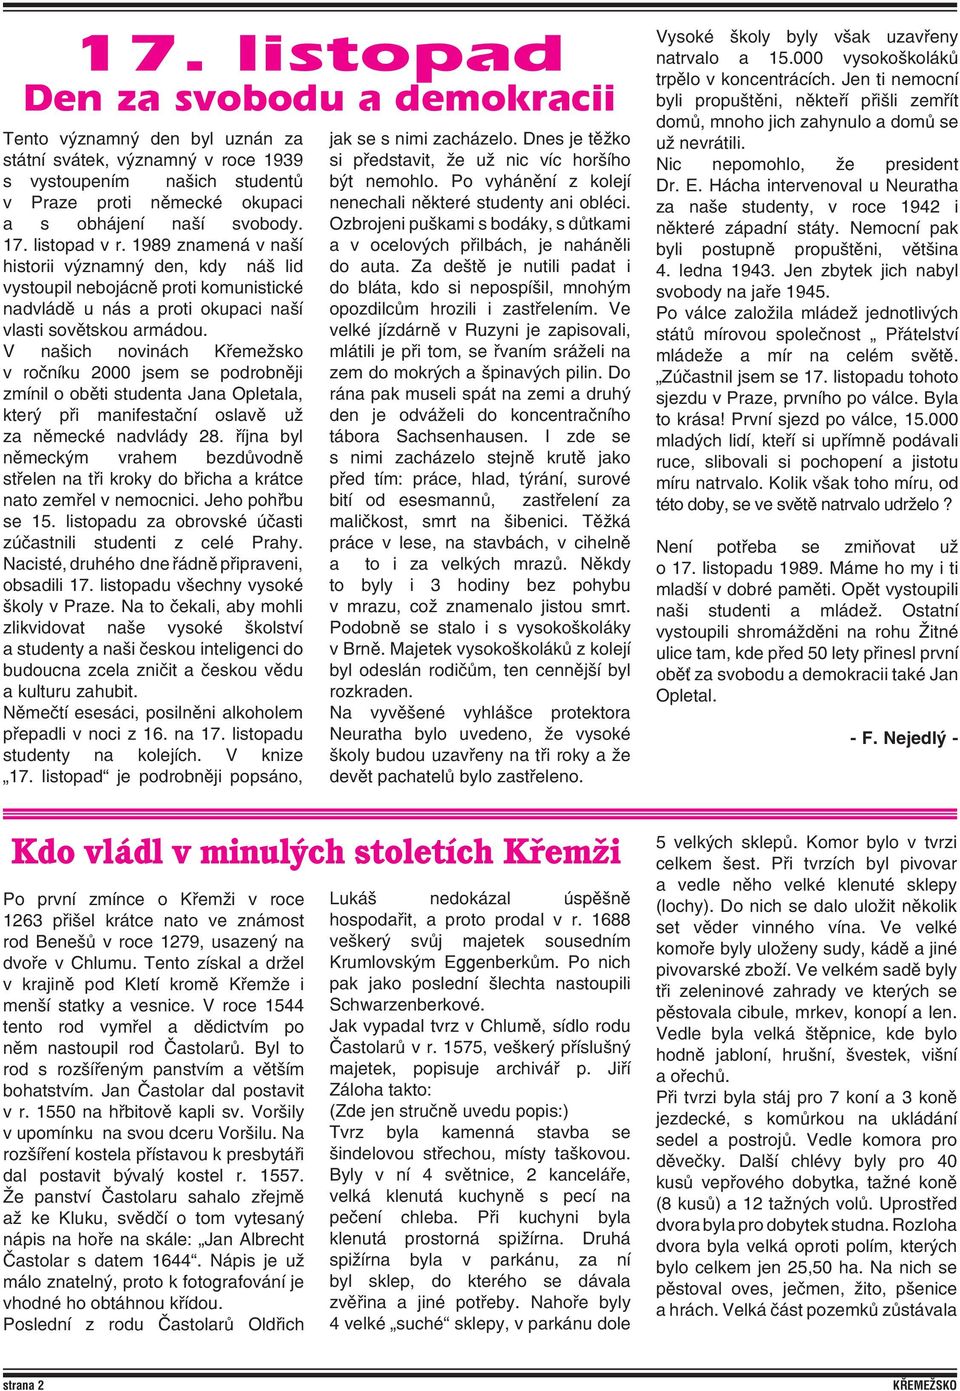 V našich novinách Křemežsko v ročníku 2000 jsem se podrobněji zmínil o oběti studenta Jana Opletala, který při manifestační oslavě už za německé nadvlády 28.